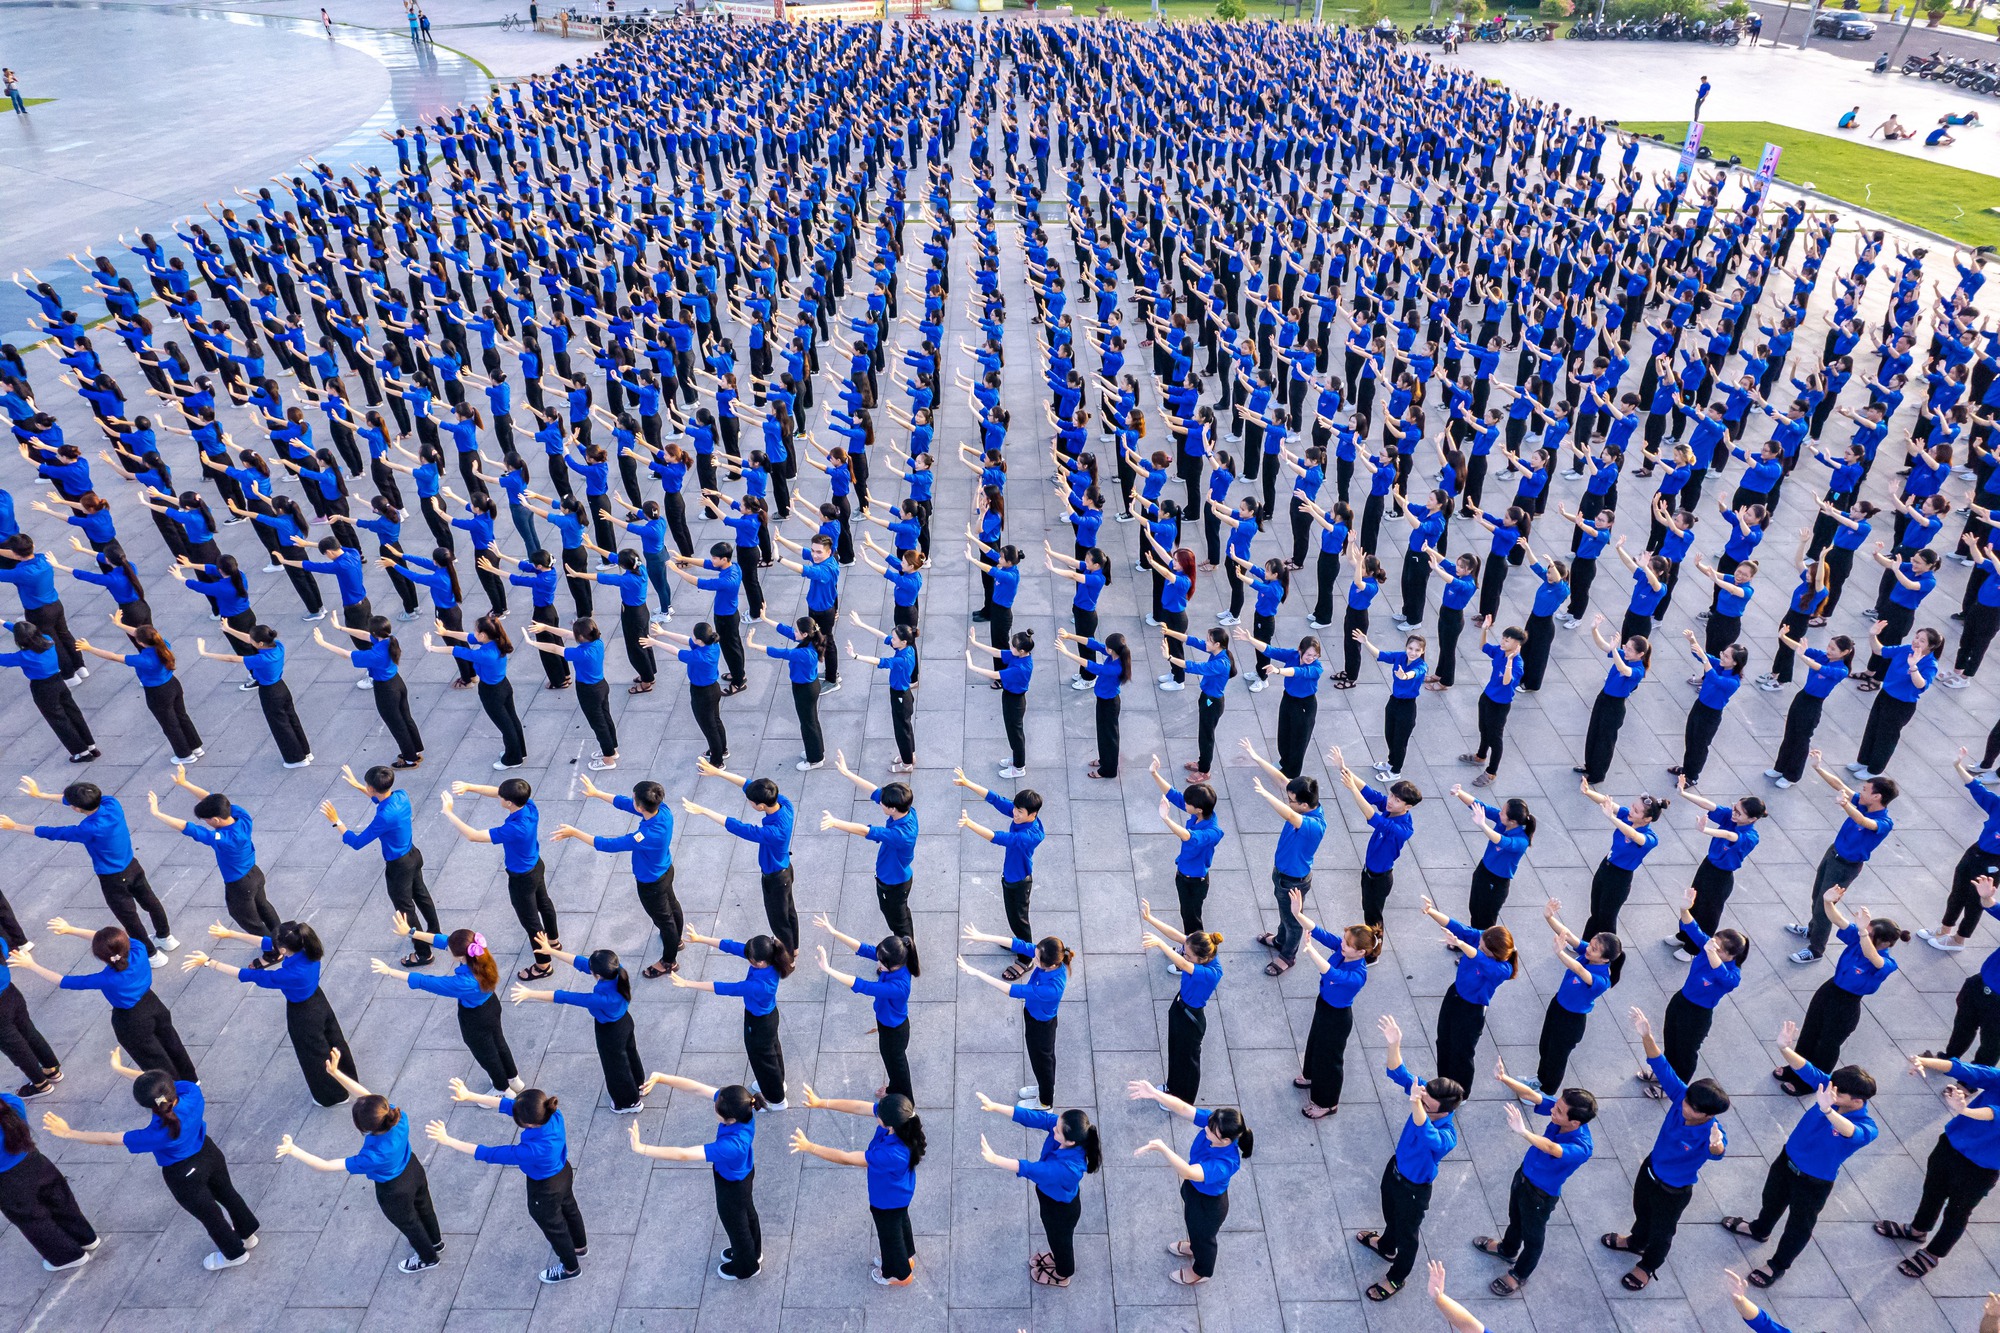 Khoảnh khắc ấn tượng 2.000 người ở Bình Định đồng diễn chào mừng đại hội Đoàn - Ảnh 2.